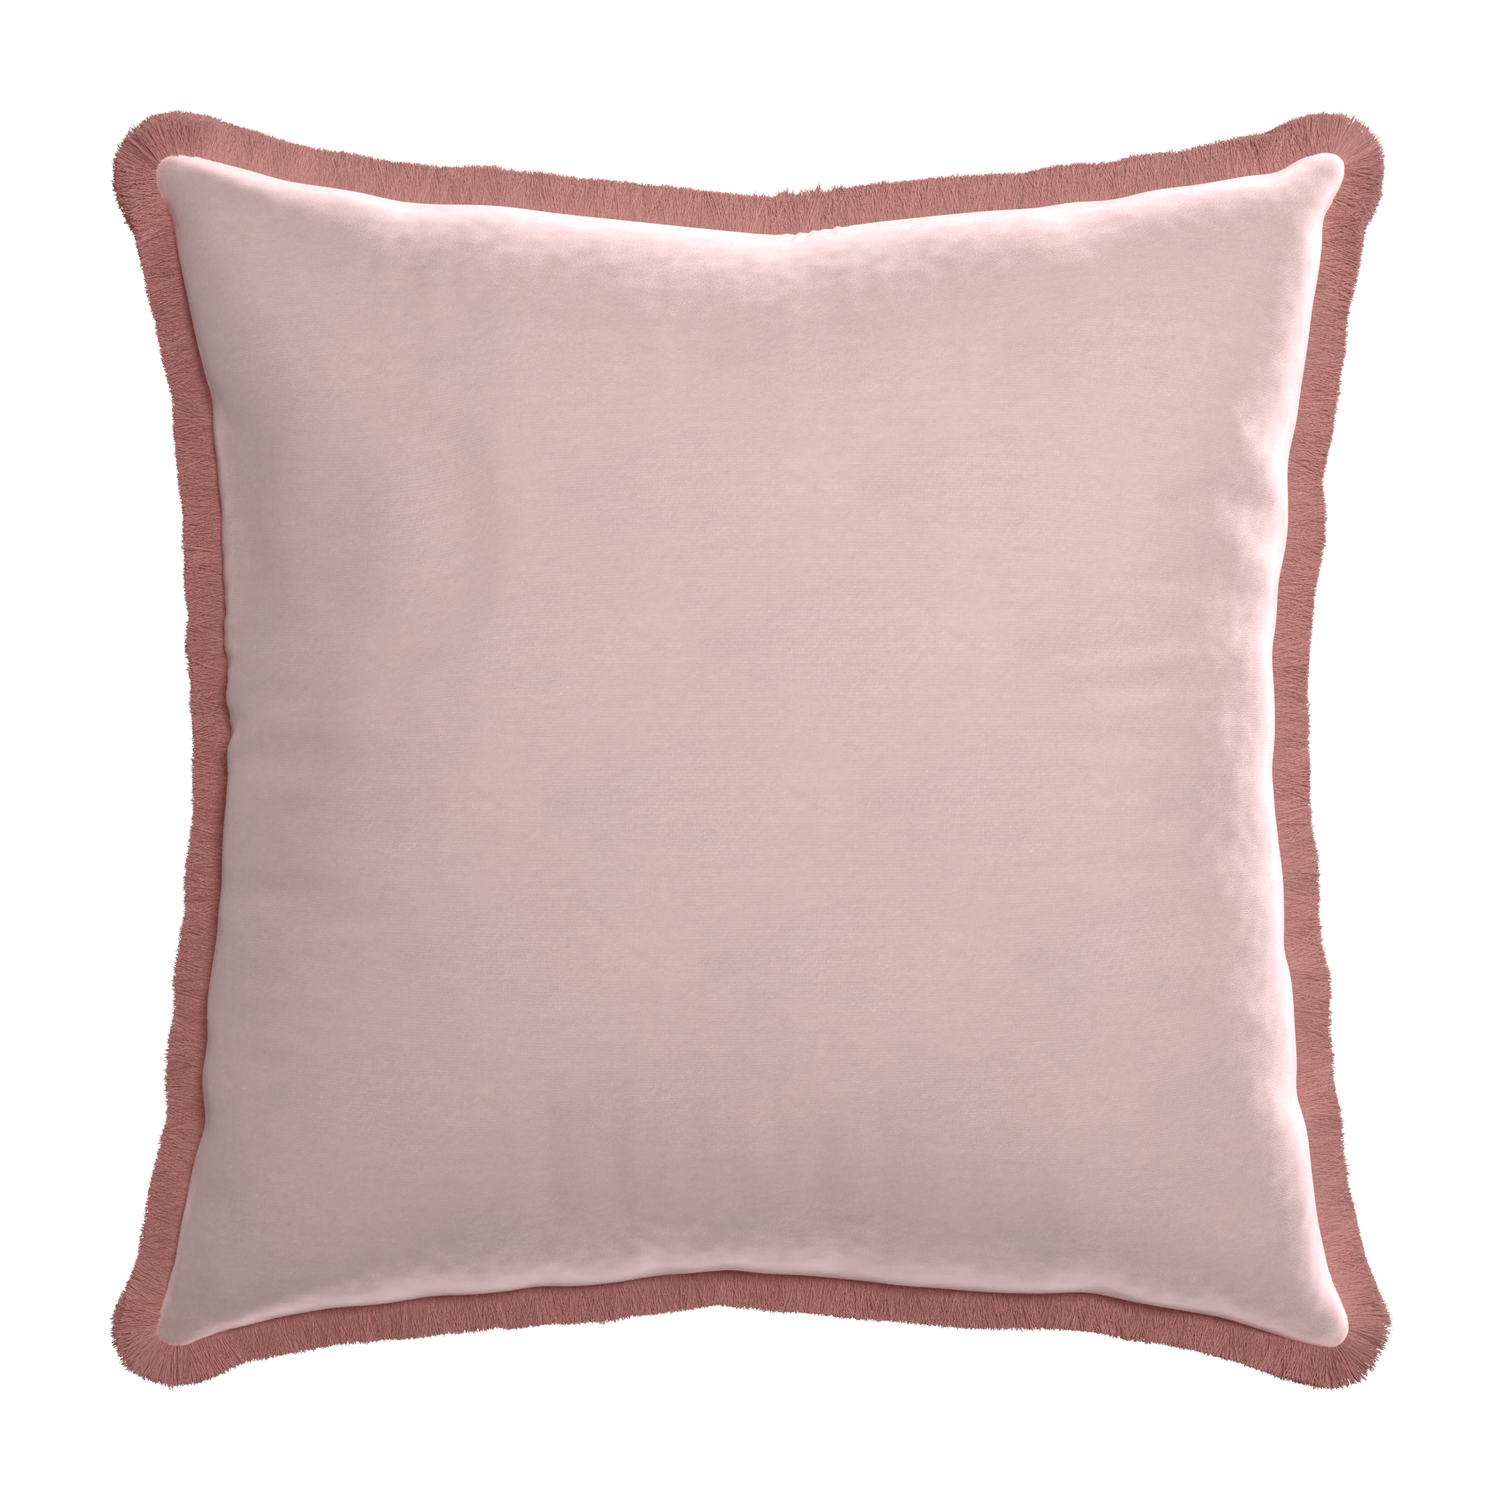 Euro-sham rose velvet custom pillow with d fringe on white background